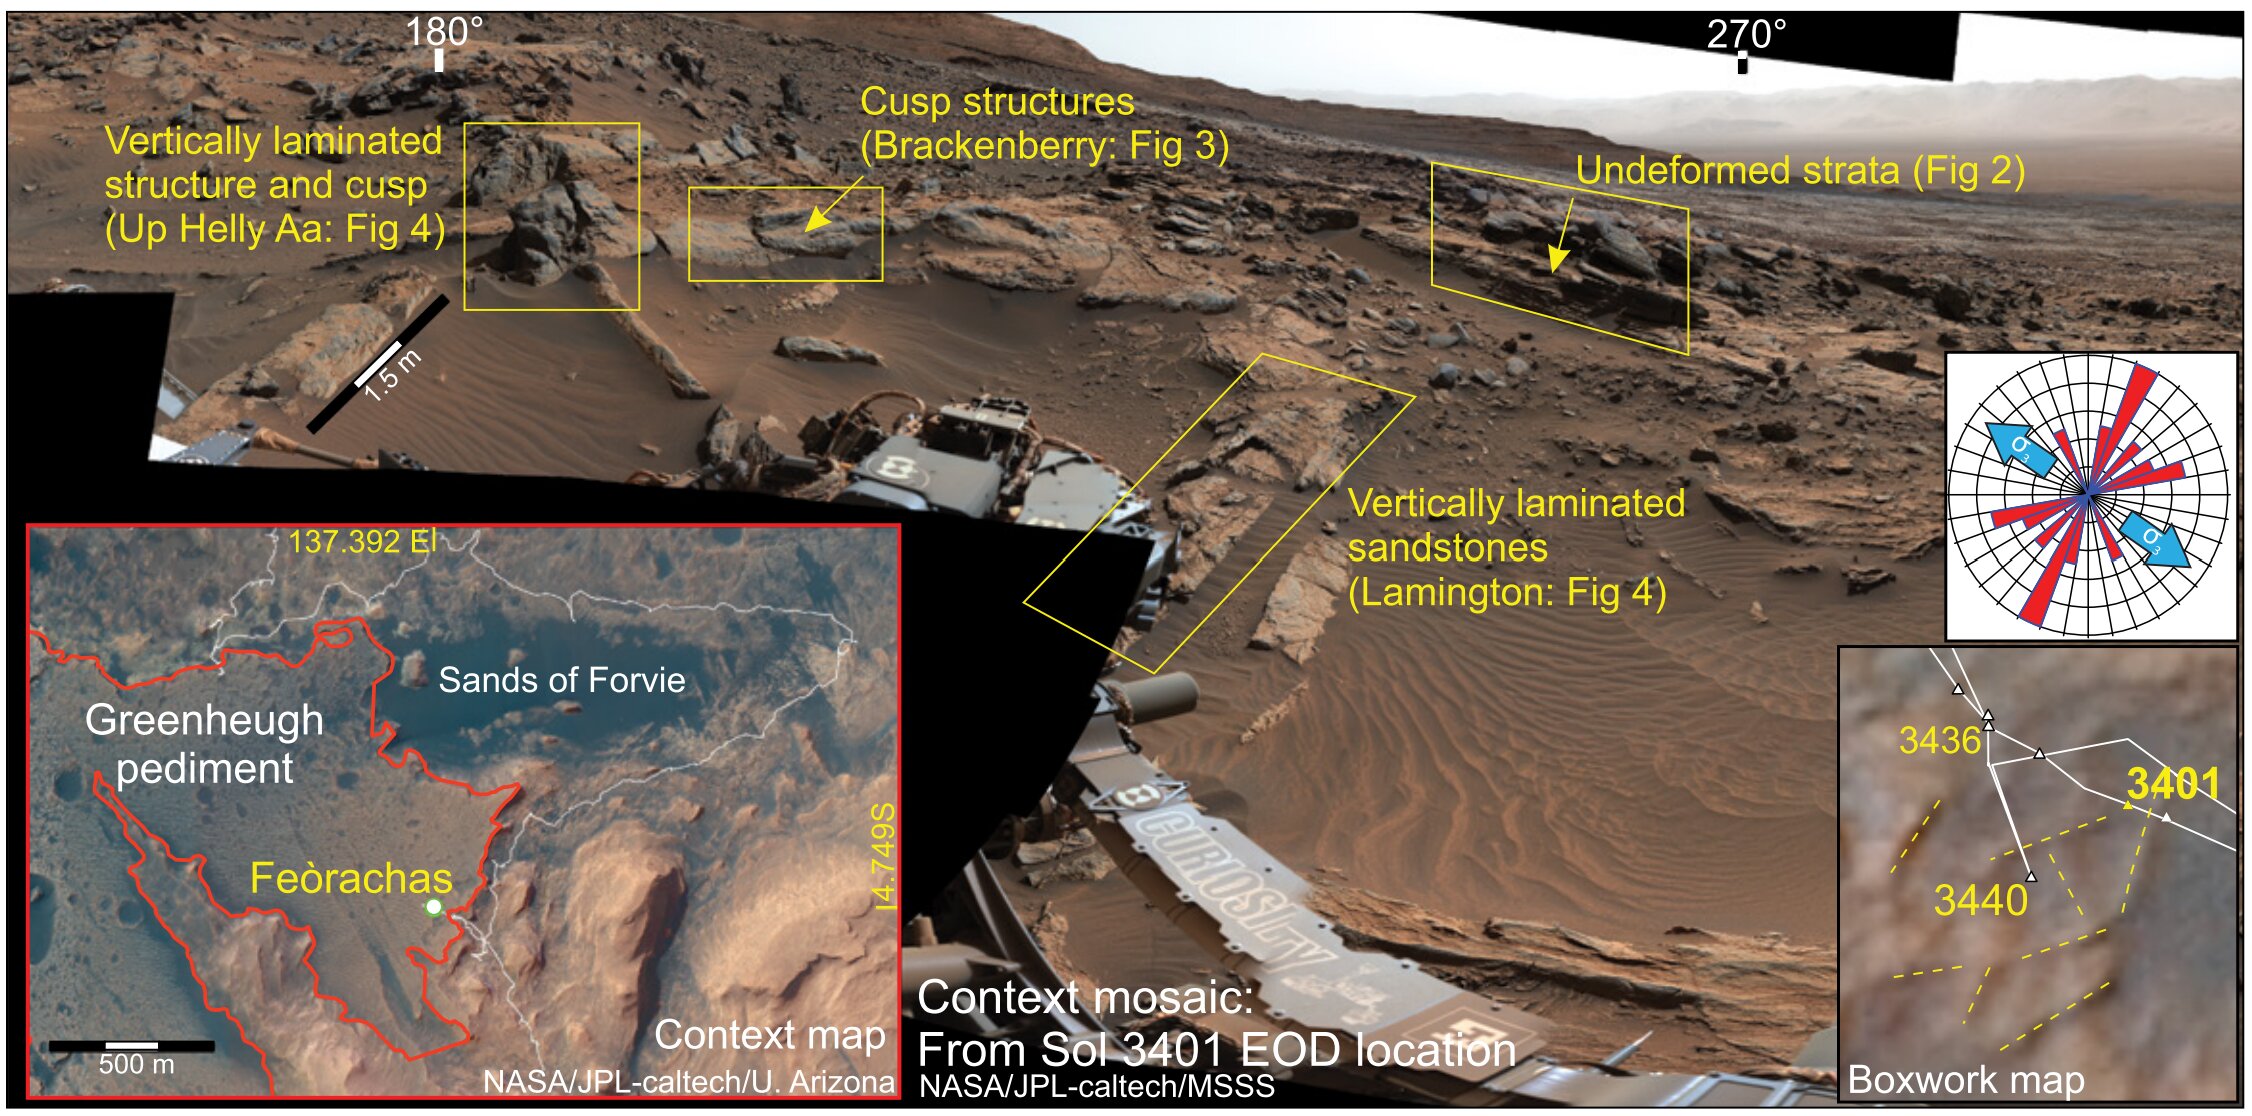 Badanie wykazało, że woda w kraterze Gale na Marsie utrzymywała się dłużej, niż wcześniej sądzono